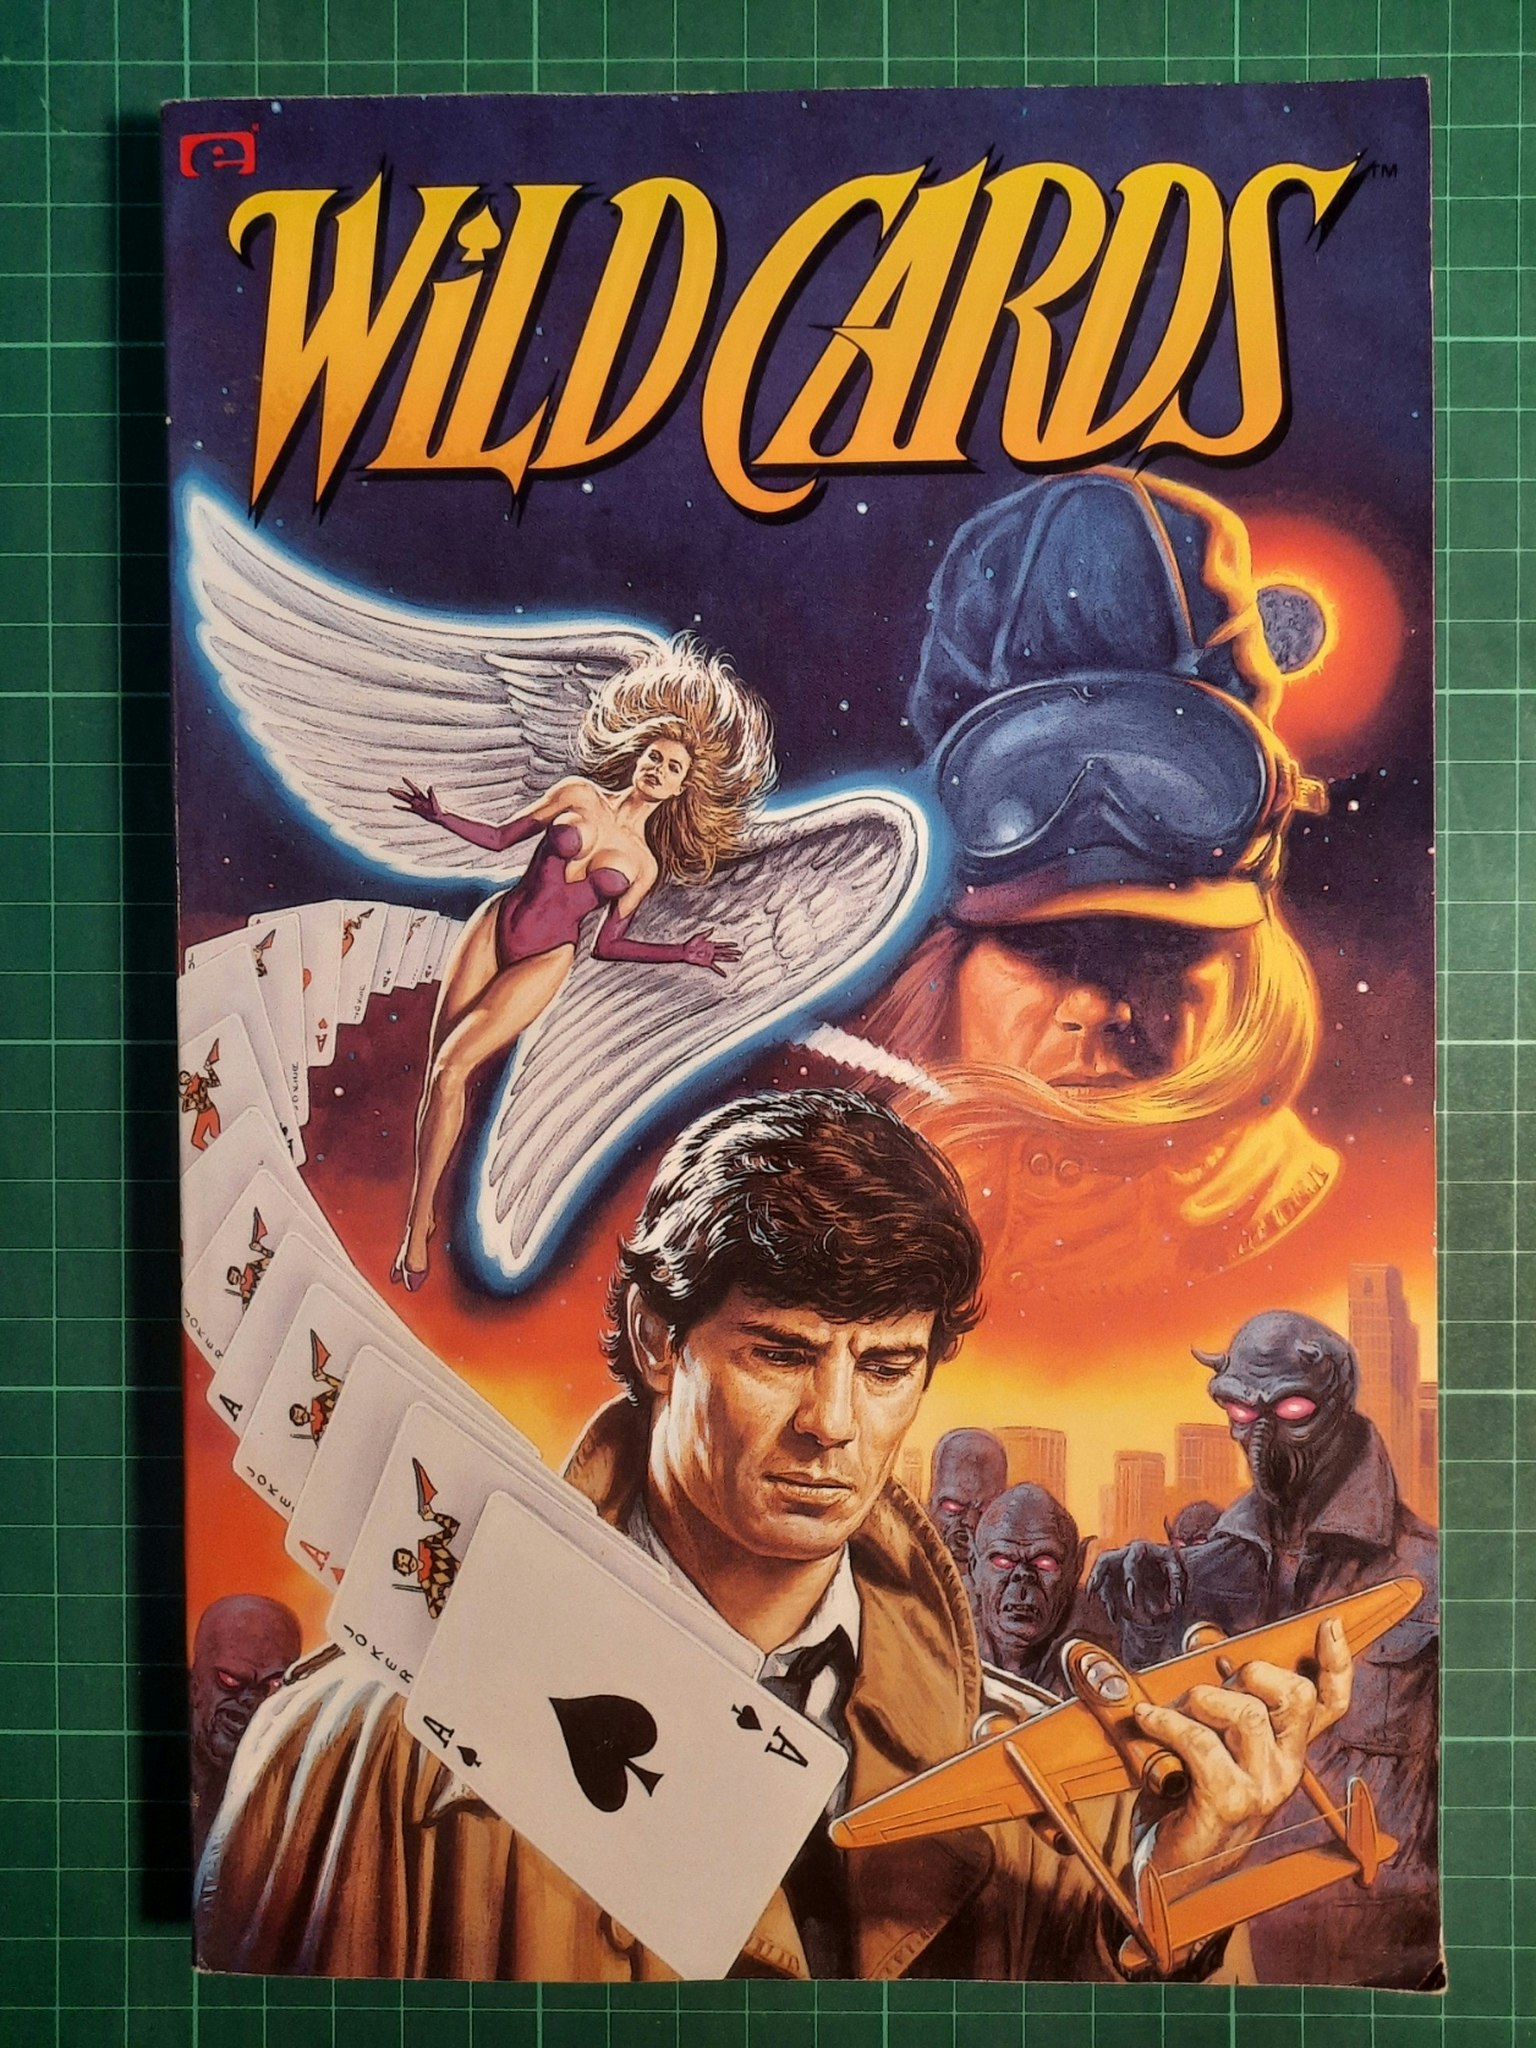 Wildcards